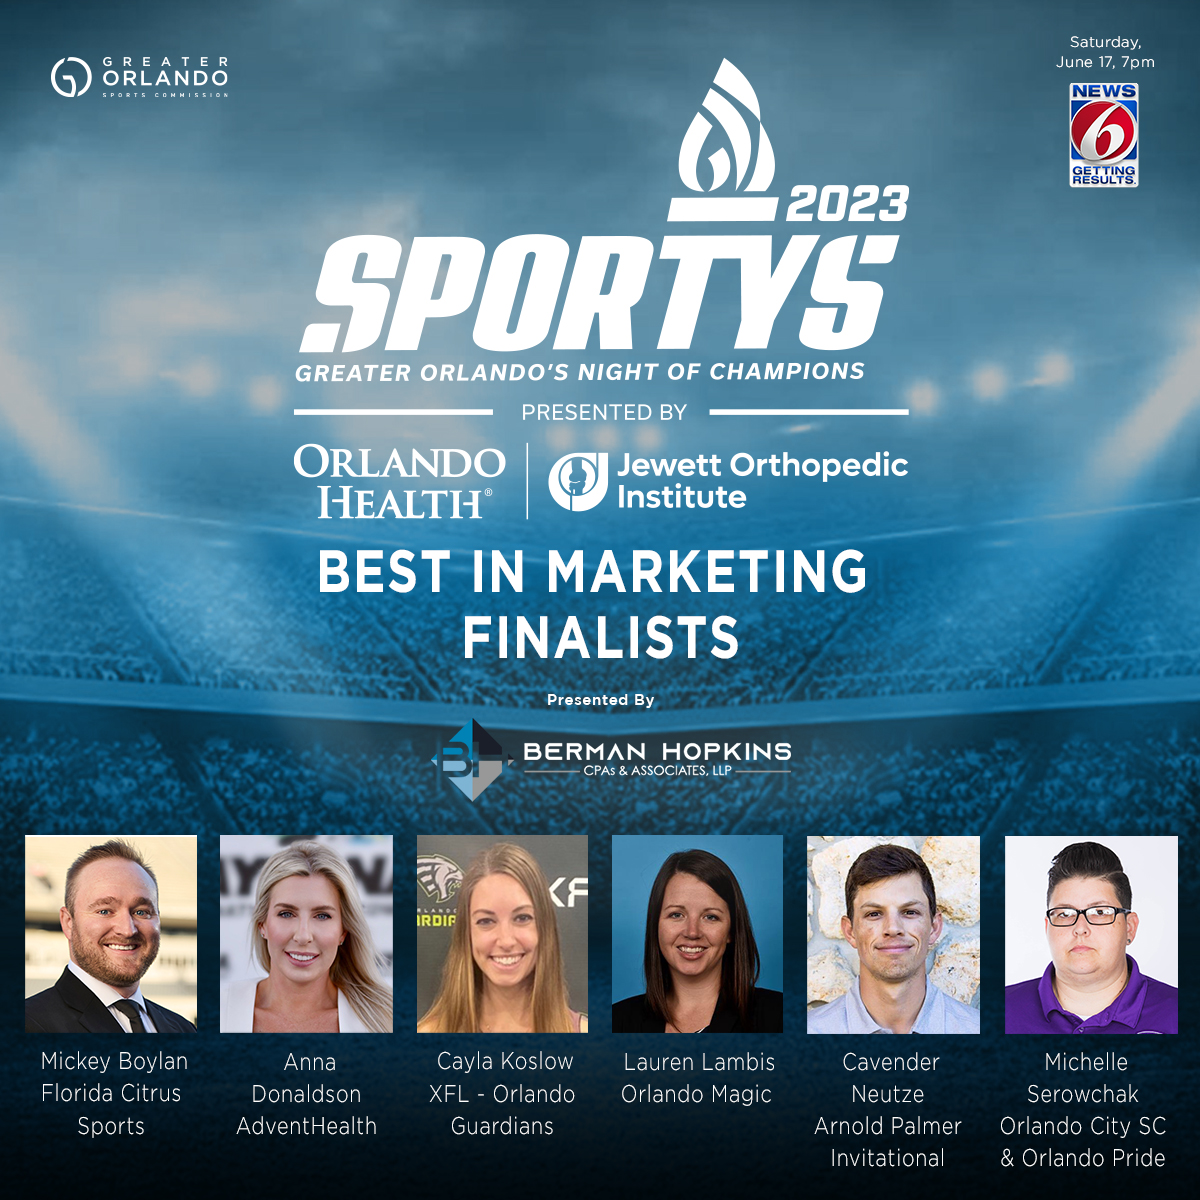 GO Sports - Social IG - SPORTYS 2023 6 finalists - Marketing copy